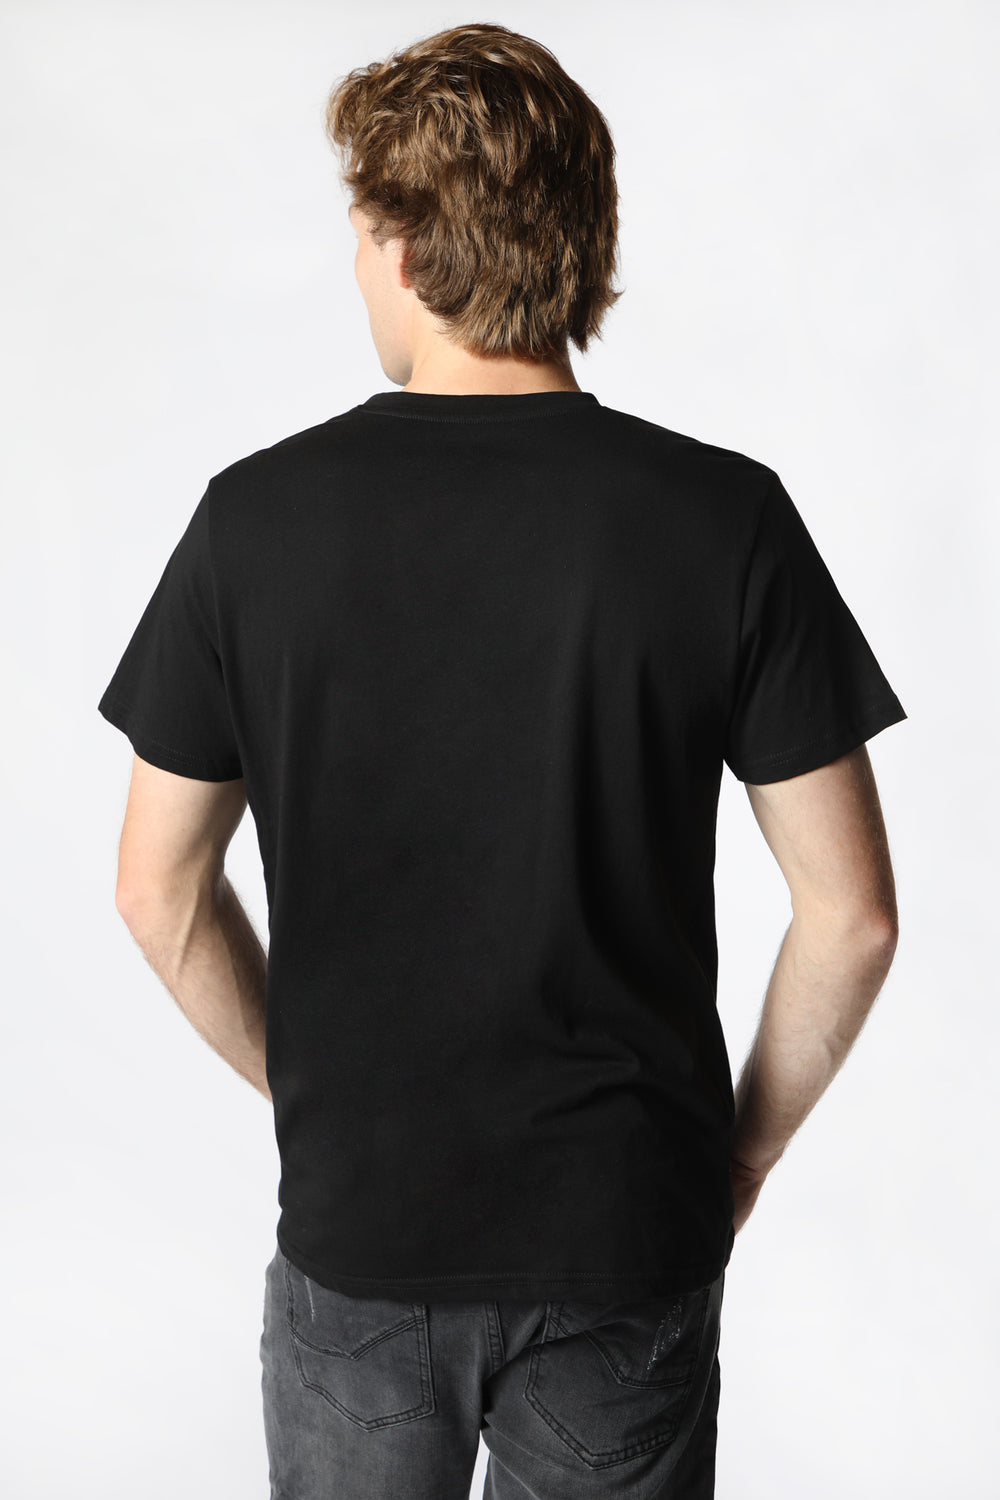 T-Shirt Imprimé Espace Rick et Morty Homme Noir